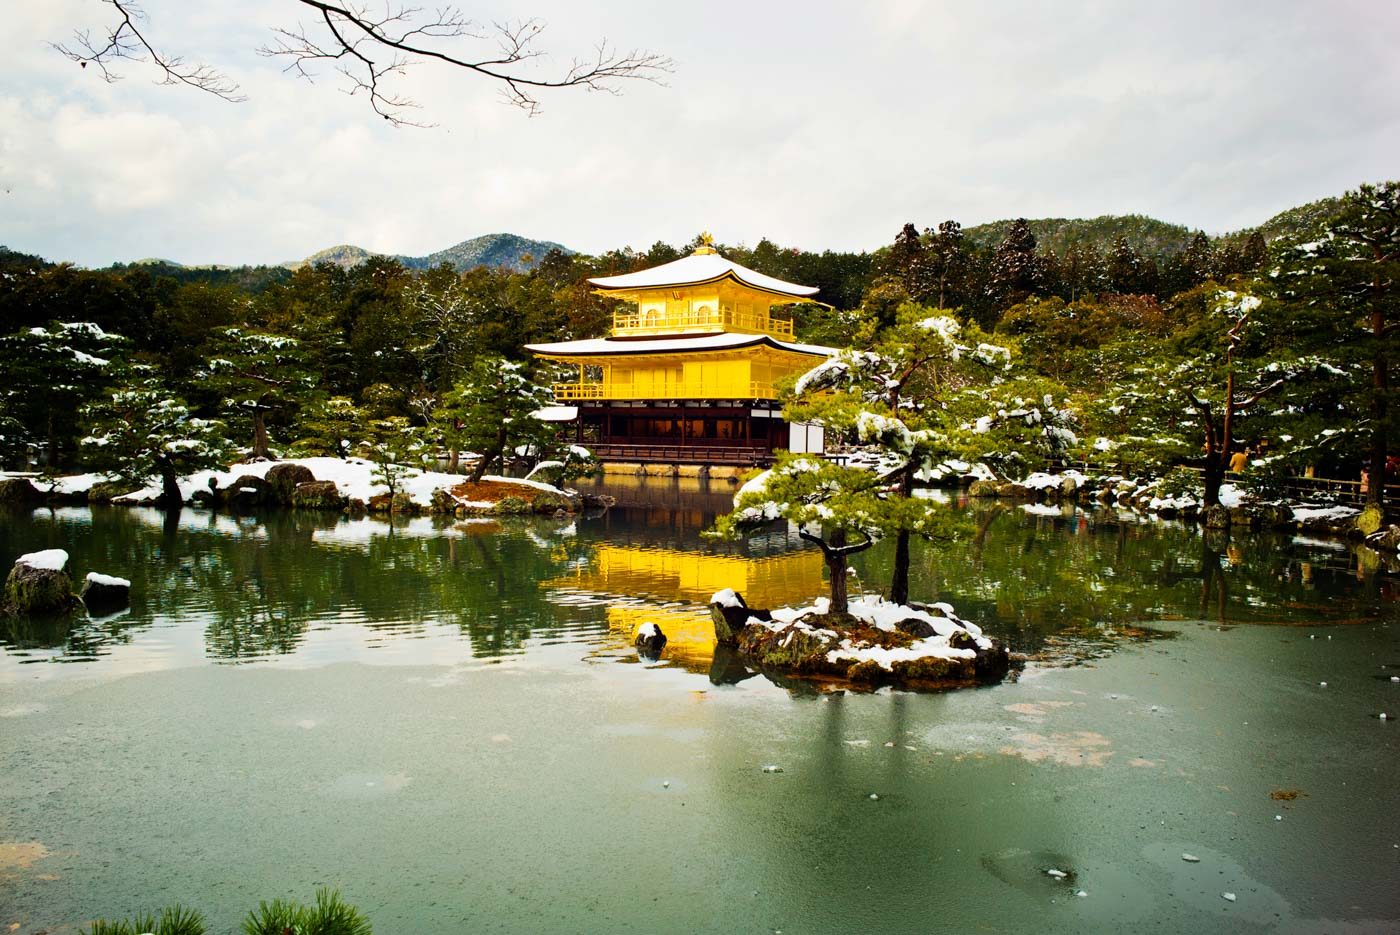 THE PAVILION. 'The Kyoto Golden Pavilion' shot by Patrick Uy 